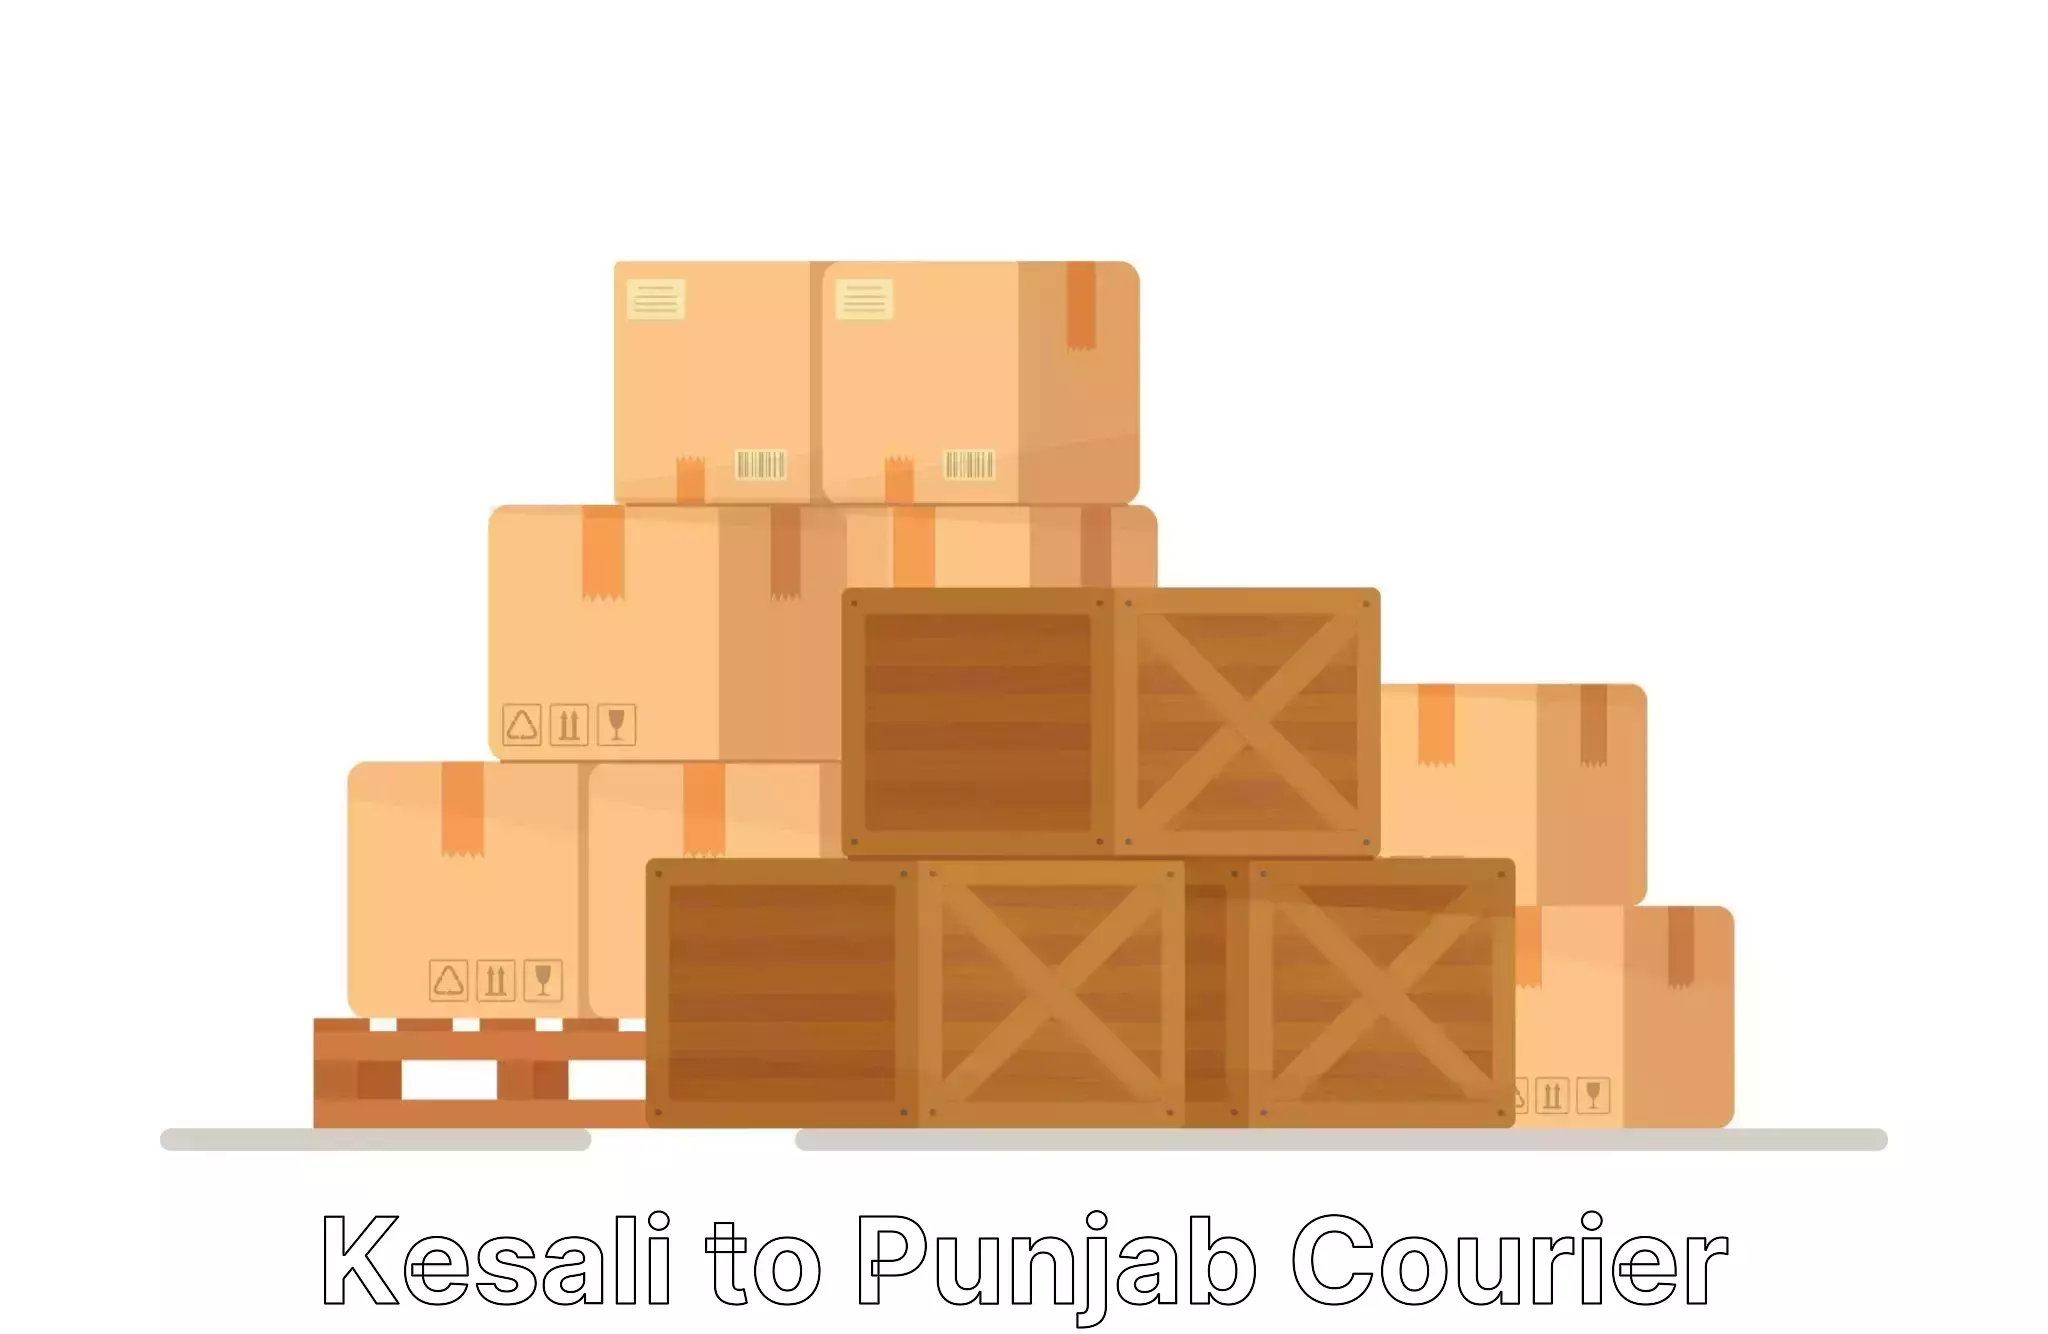 Furniture moving experts Kesali to Punjab